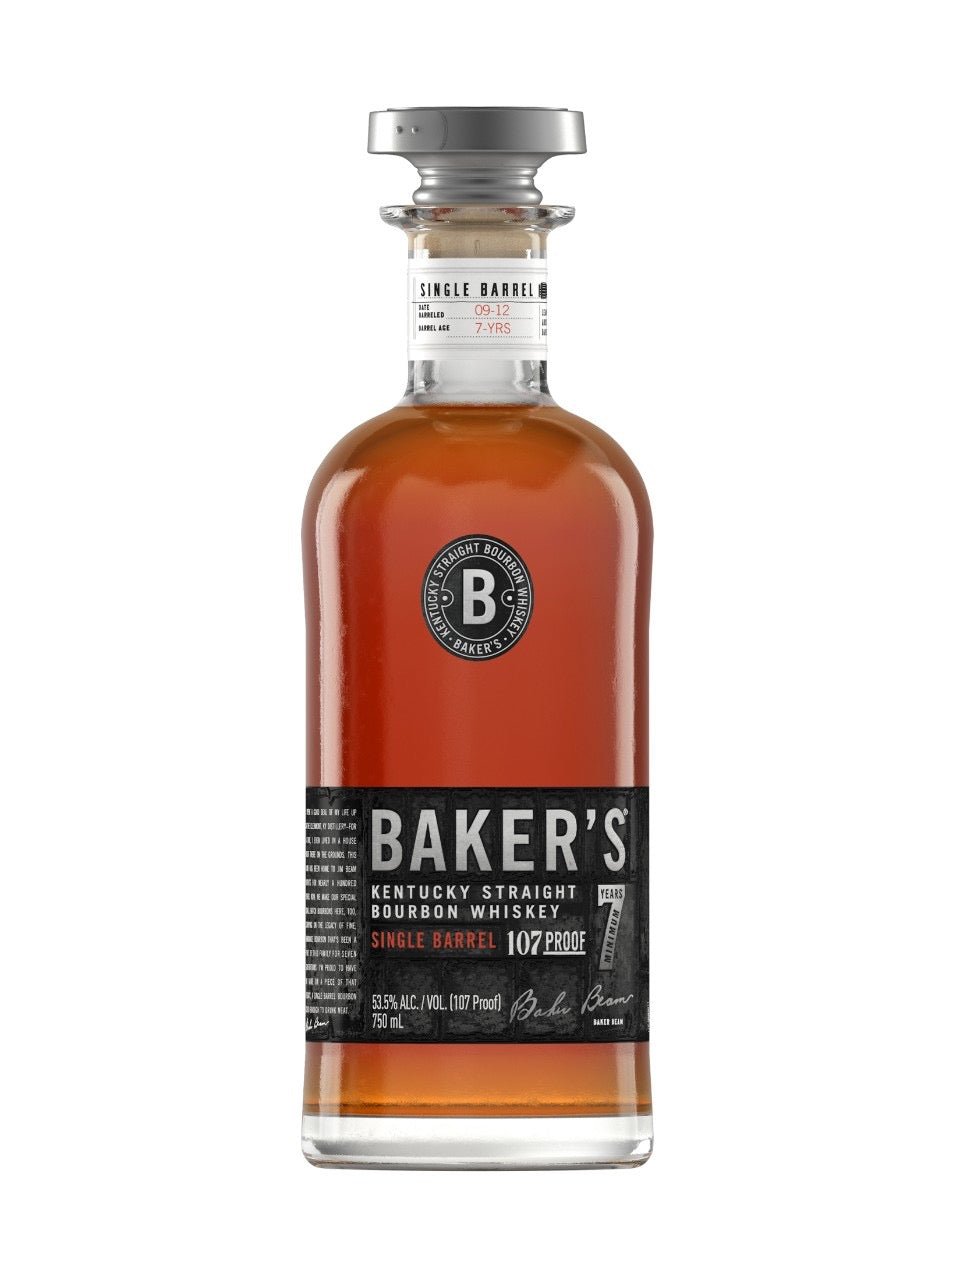 Baker's Kentucky Straight Bourbon Whiskey bottle